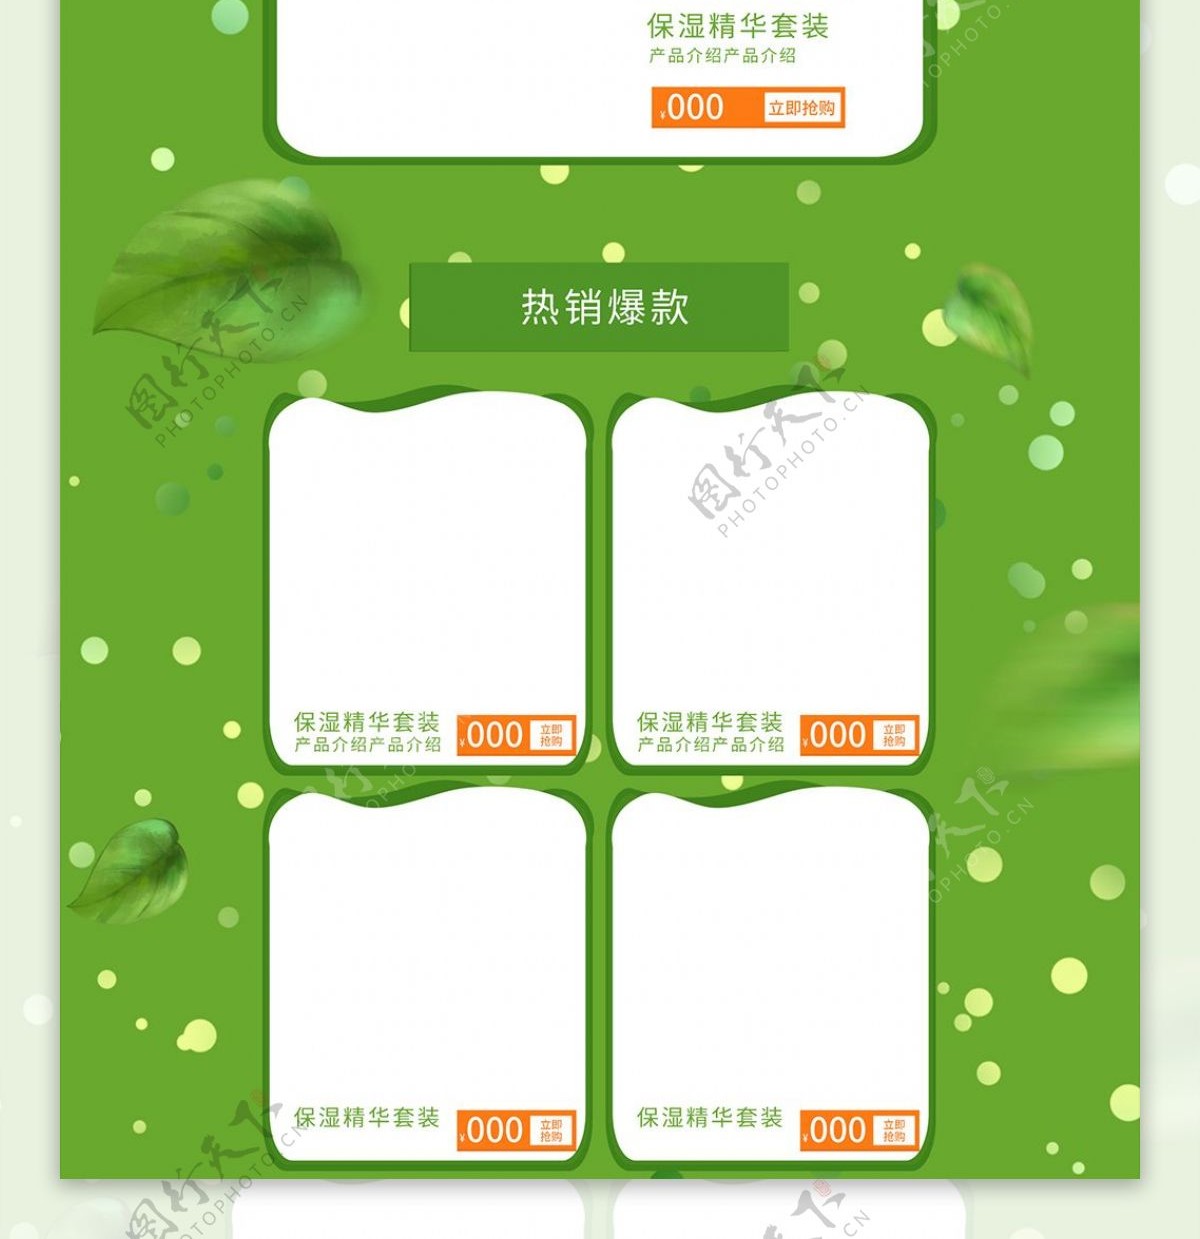 绿色植物大自然京东洗护节首页模板